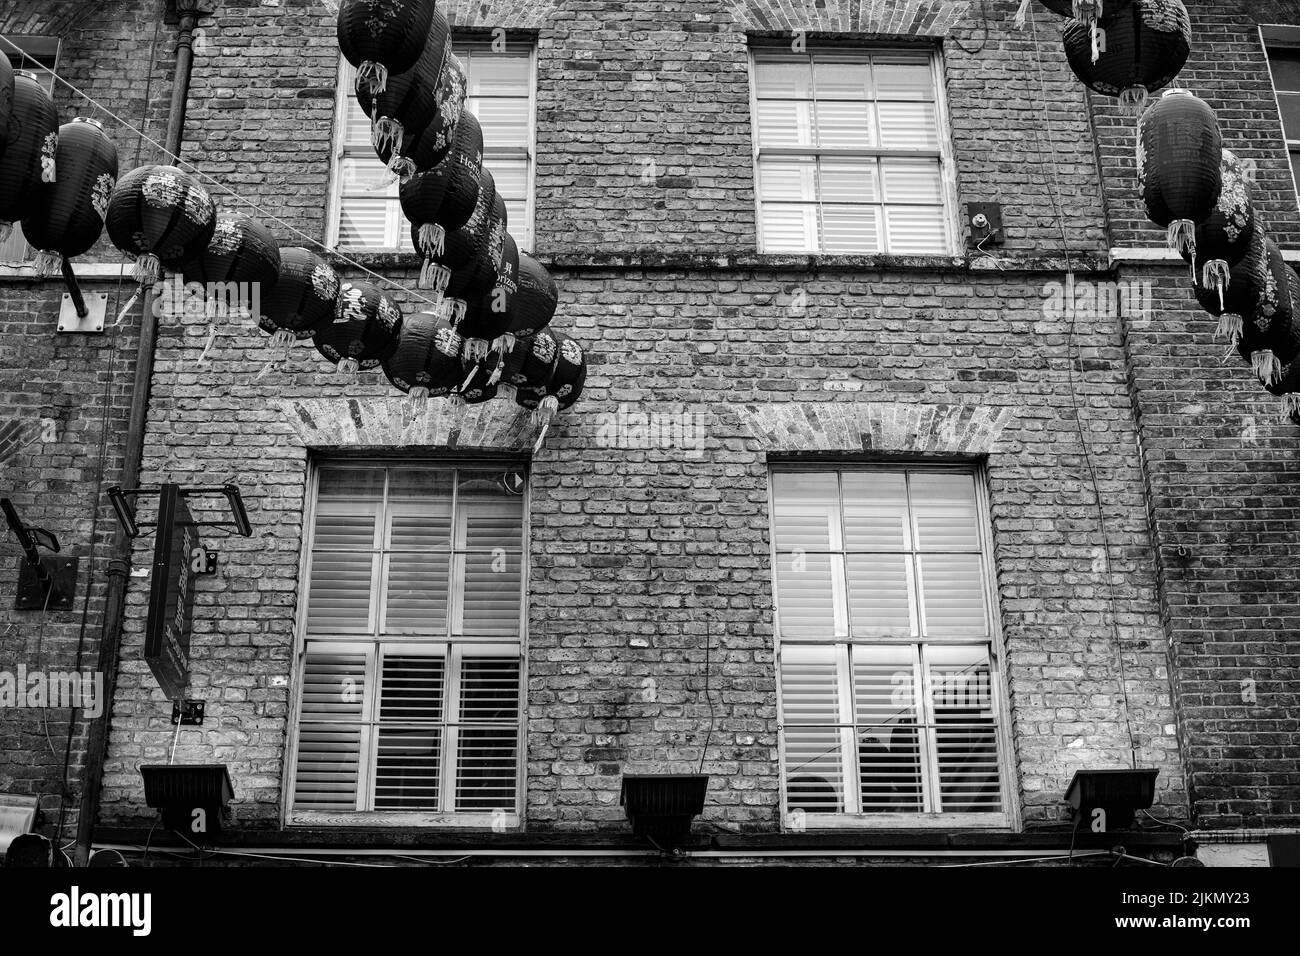 Un basso angolo in scala di grigi dell'edificio di China Town con Lanterne e carte appese decorate, Londra, Regno Unito Foto Stock